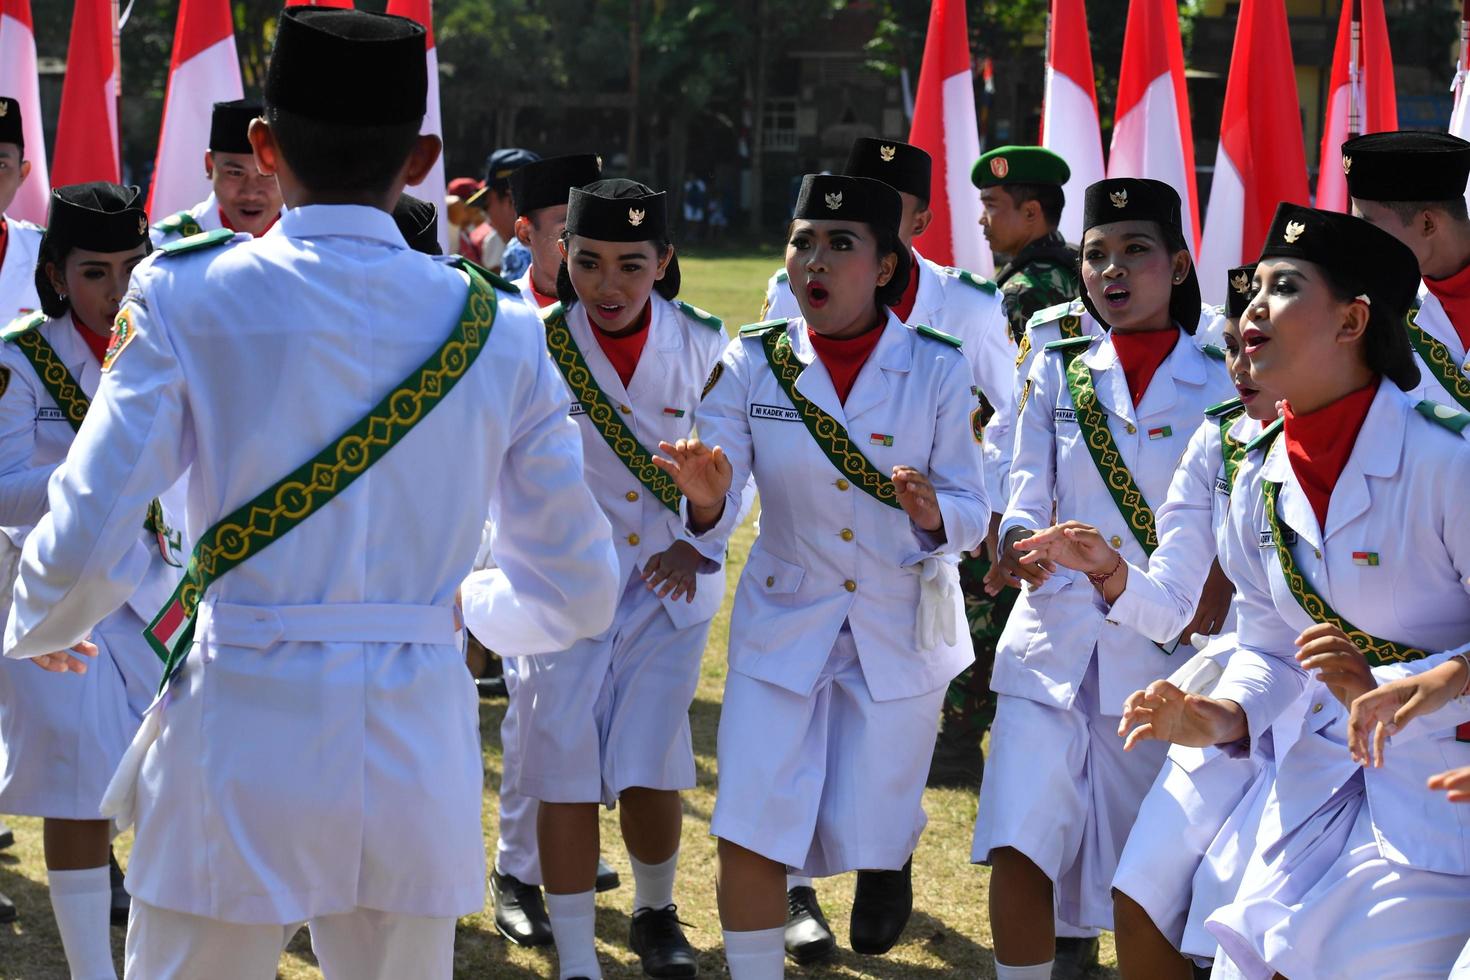 ubud, indonésia - 17 de agosto de 2016 - o dia da independência está comemorando em todo o país foto